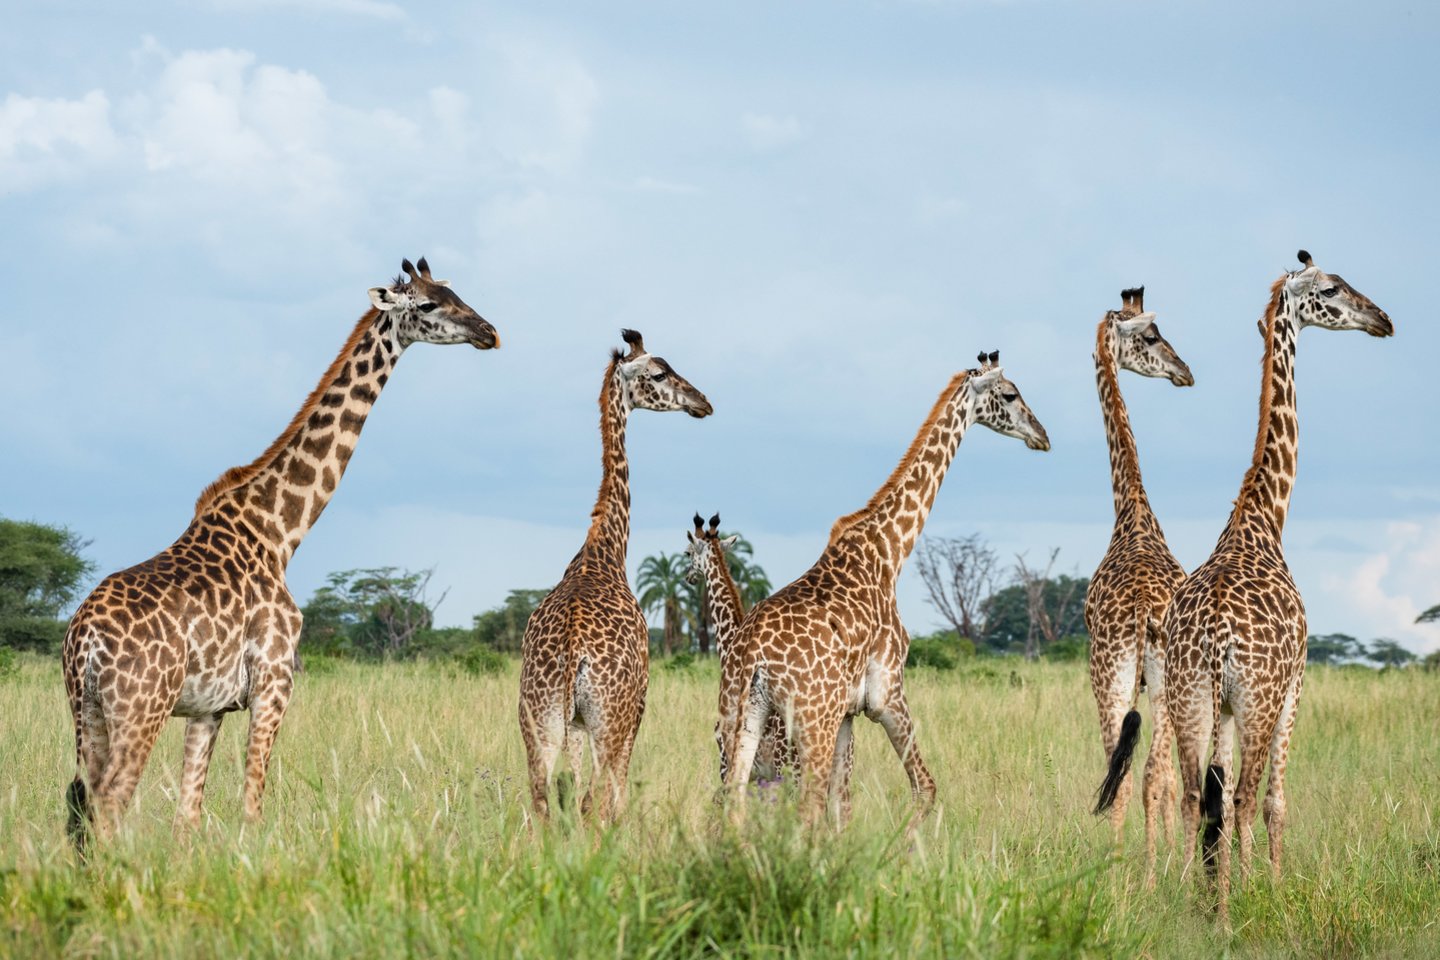  Ant žirafos liežuvio yra tamsaus pigmento melanino. Kam šio pigmento reikia Afrikos gyvūnui – iki galo neaišku.<br> Scanpix nuotr.